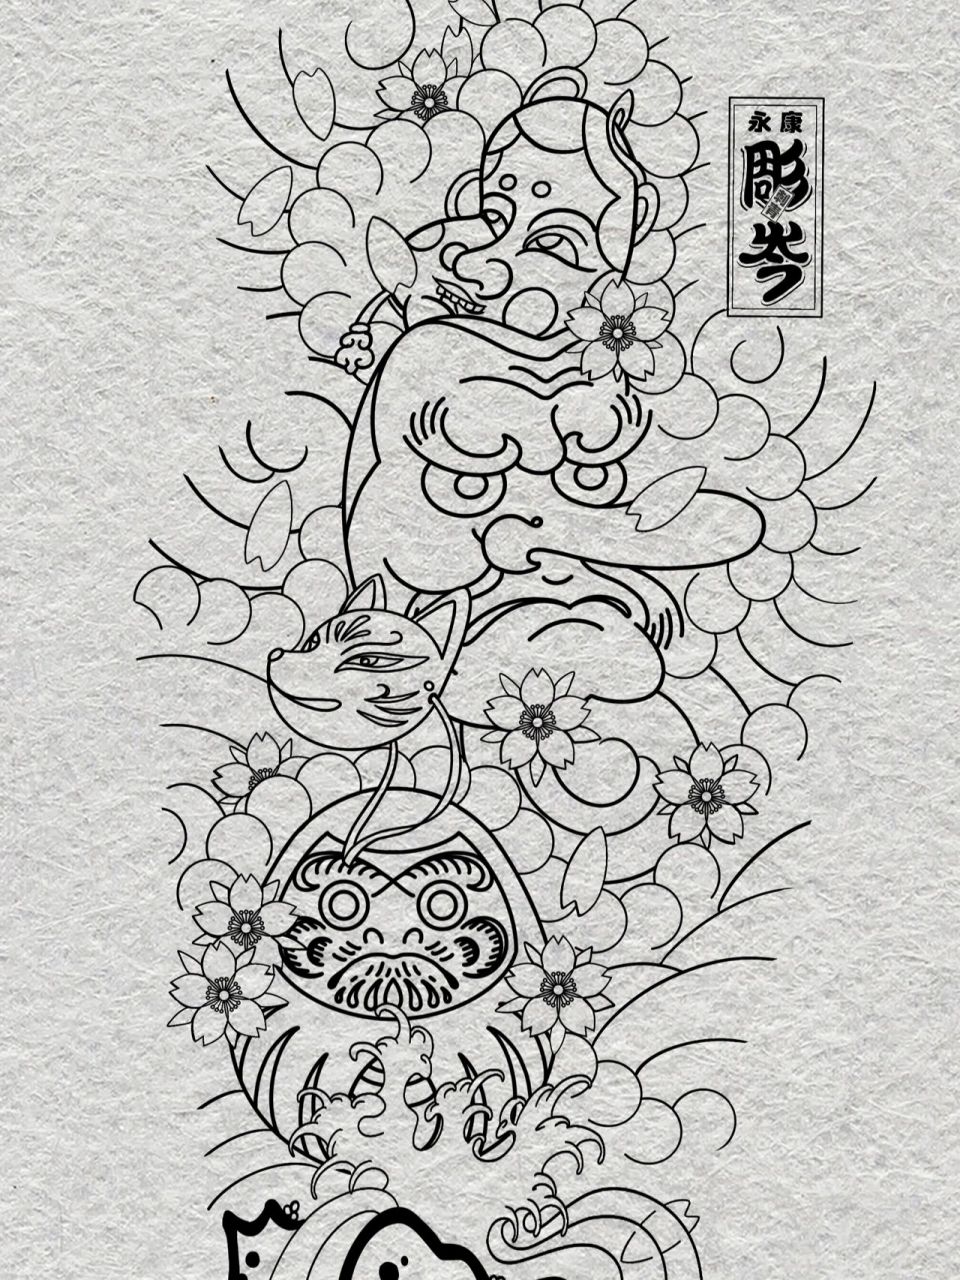 日式老传统花臂纹身手稿 私人定制